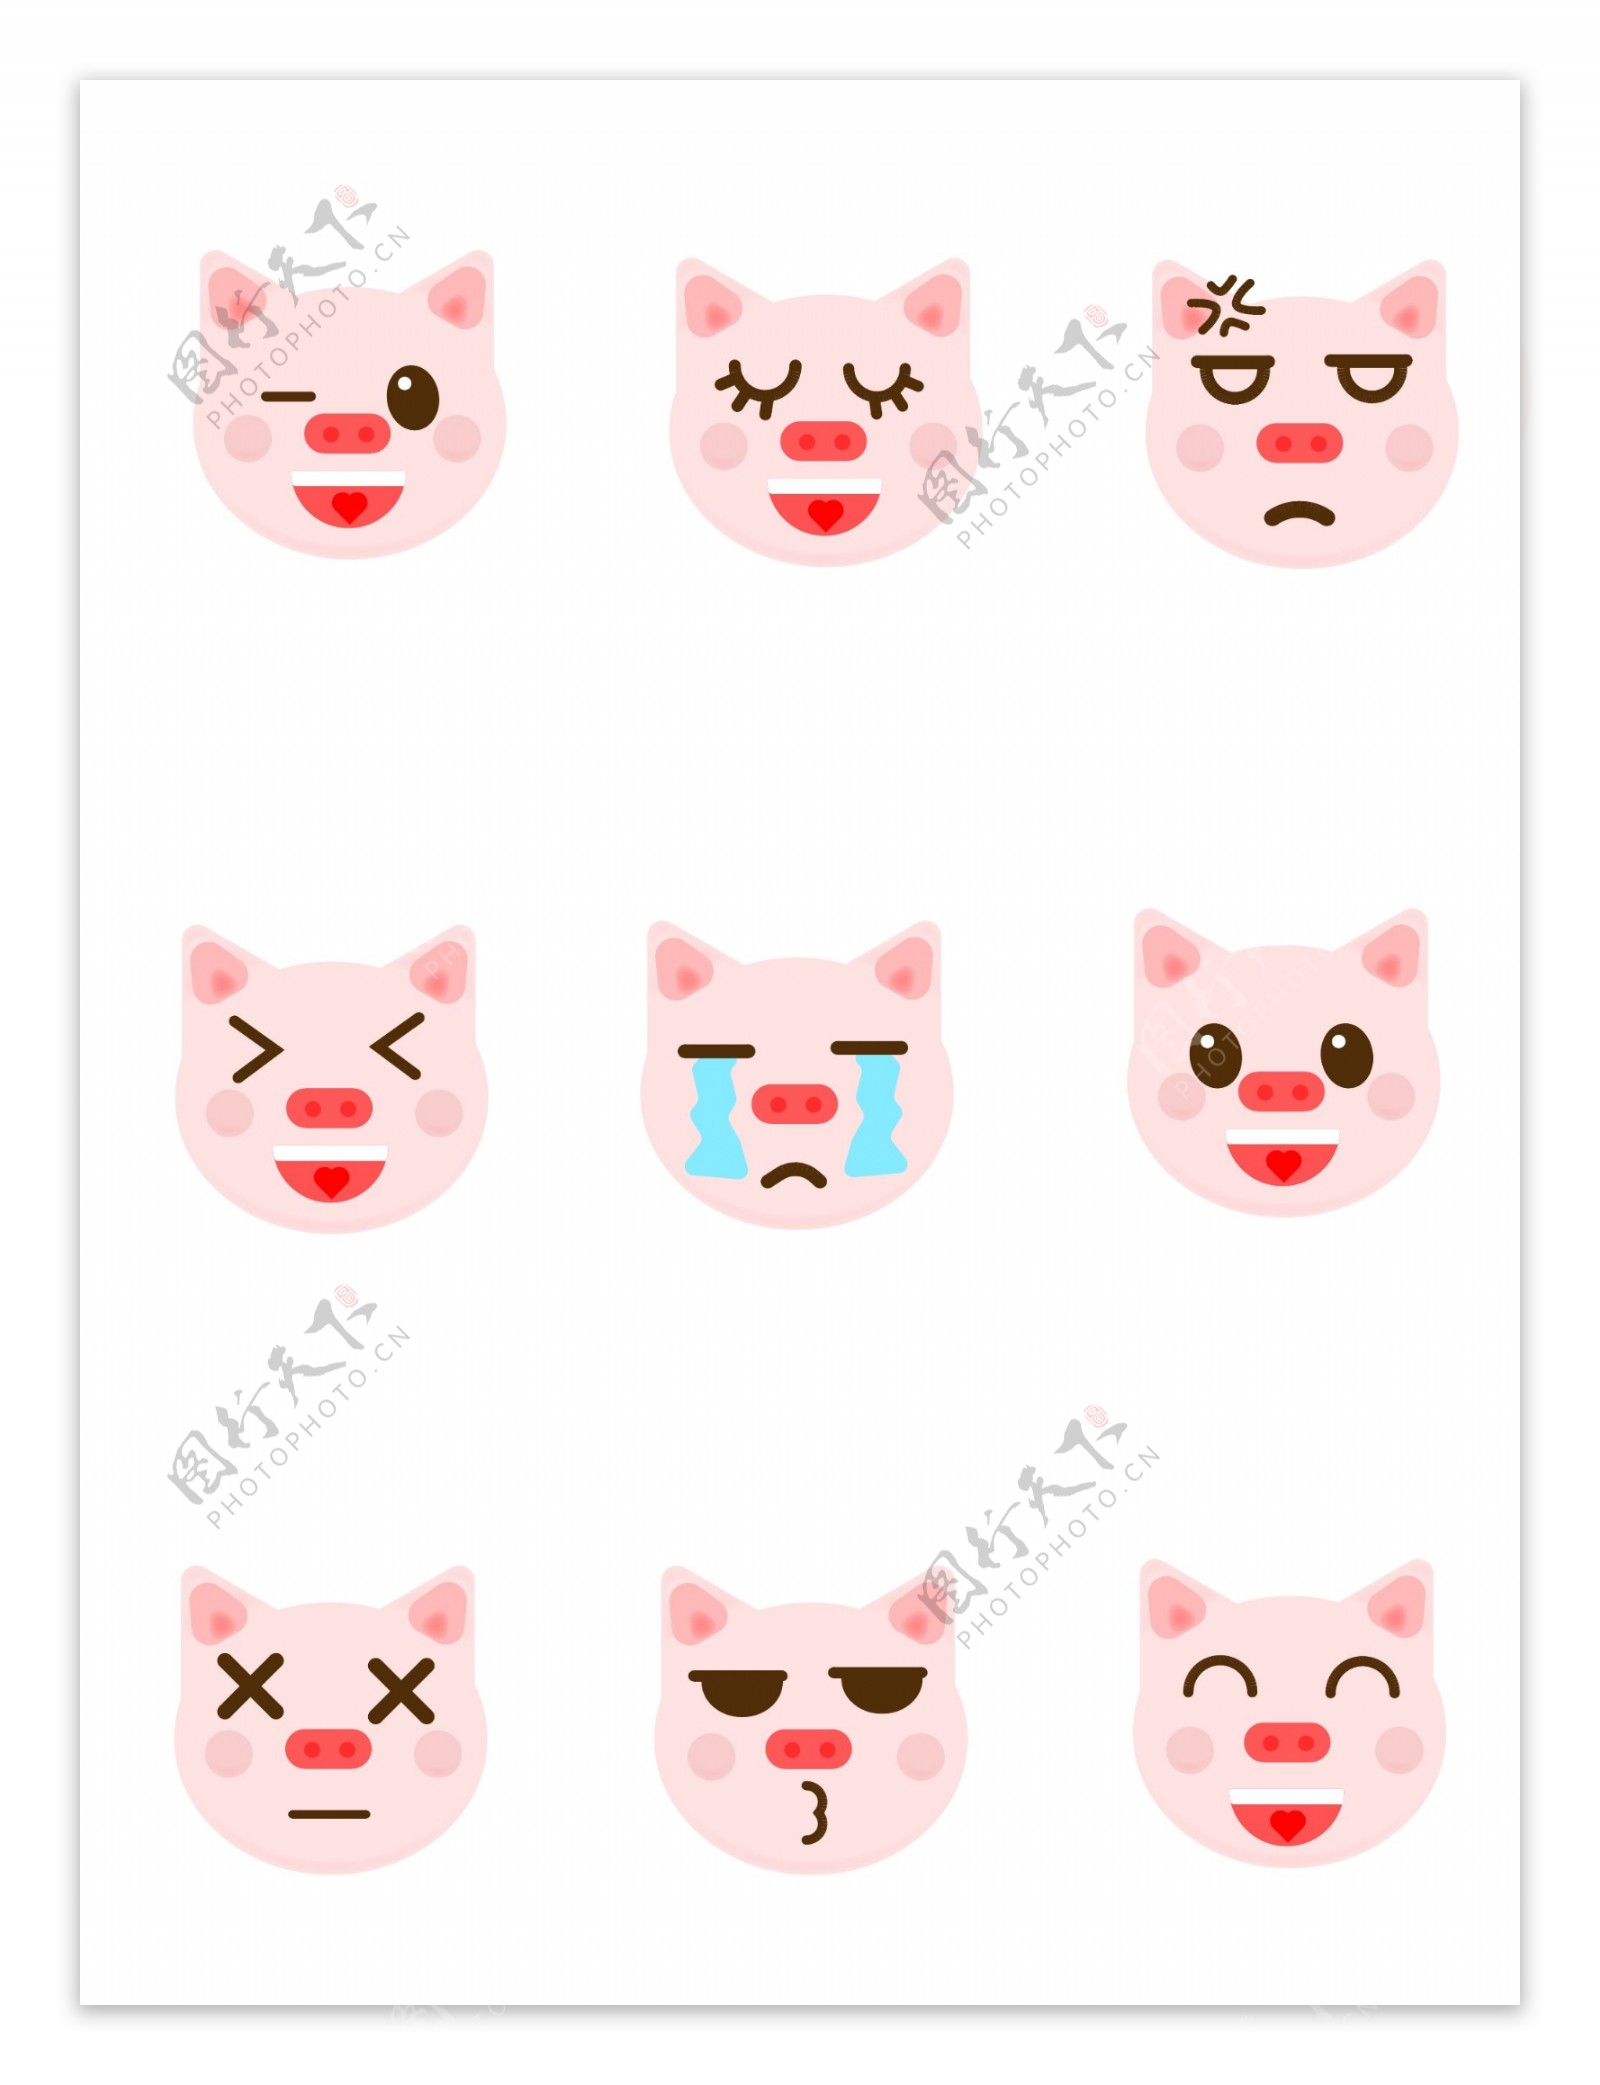 表情包猪表情卡通可爱动物矢量可商用